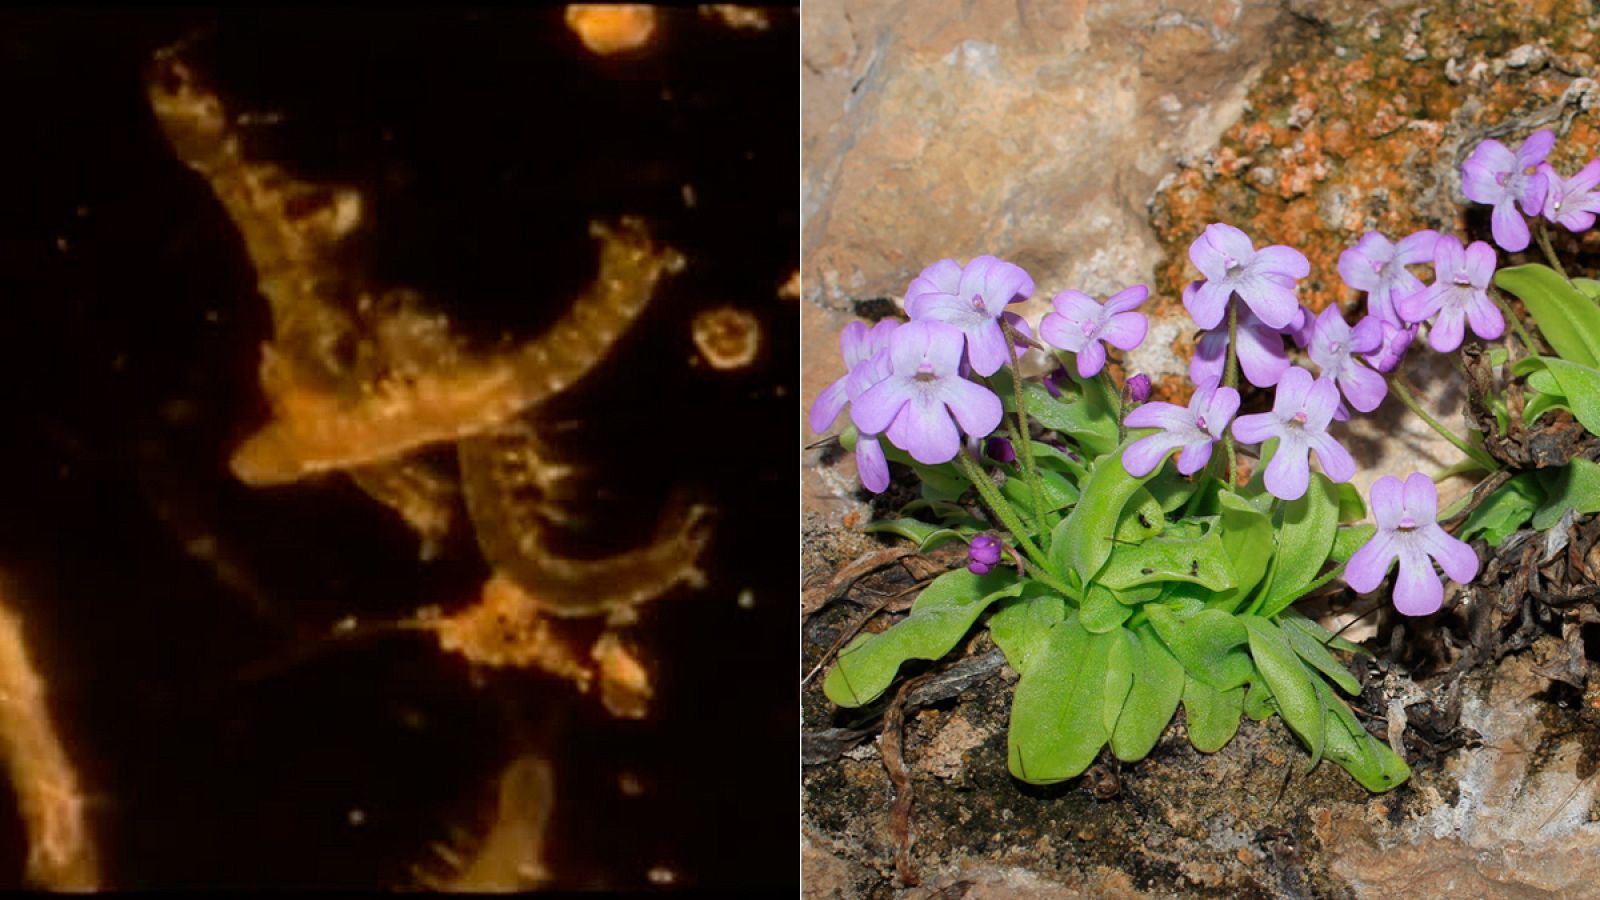 Nuevas especies españolas: Una "gamba" minúscula, una estrella de mar o una planta carnívora - RTVE.es